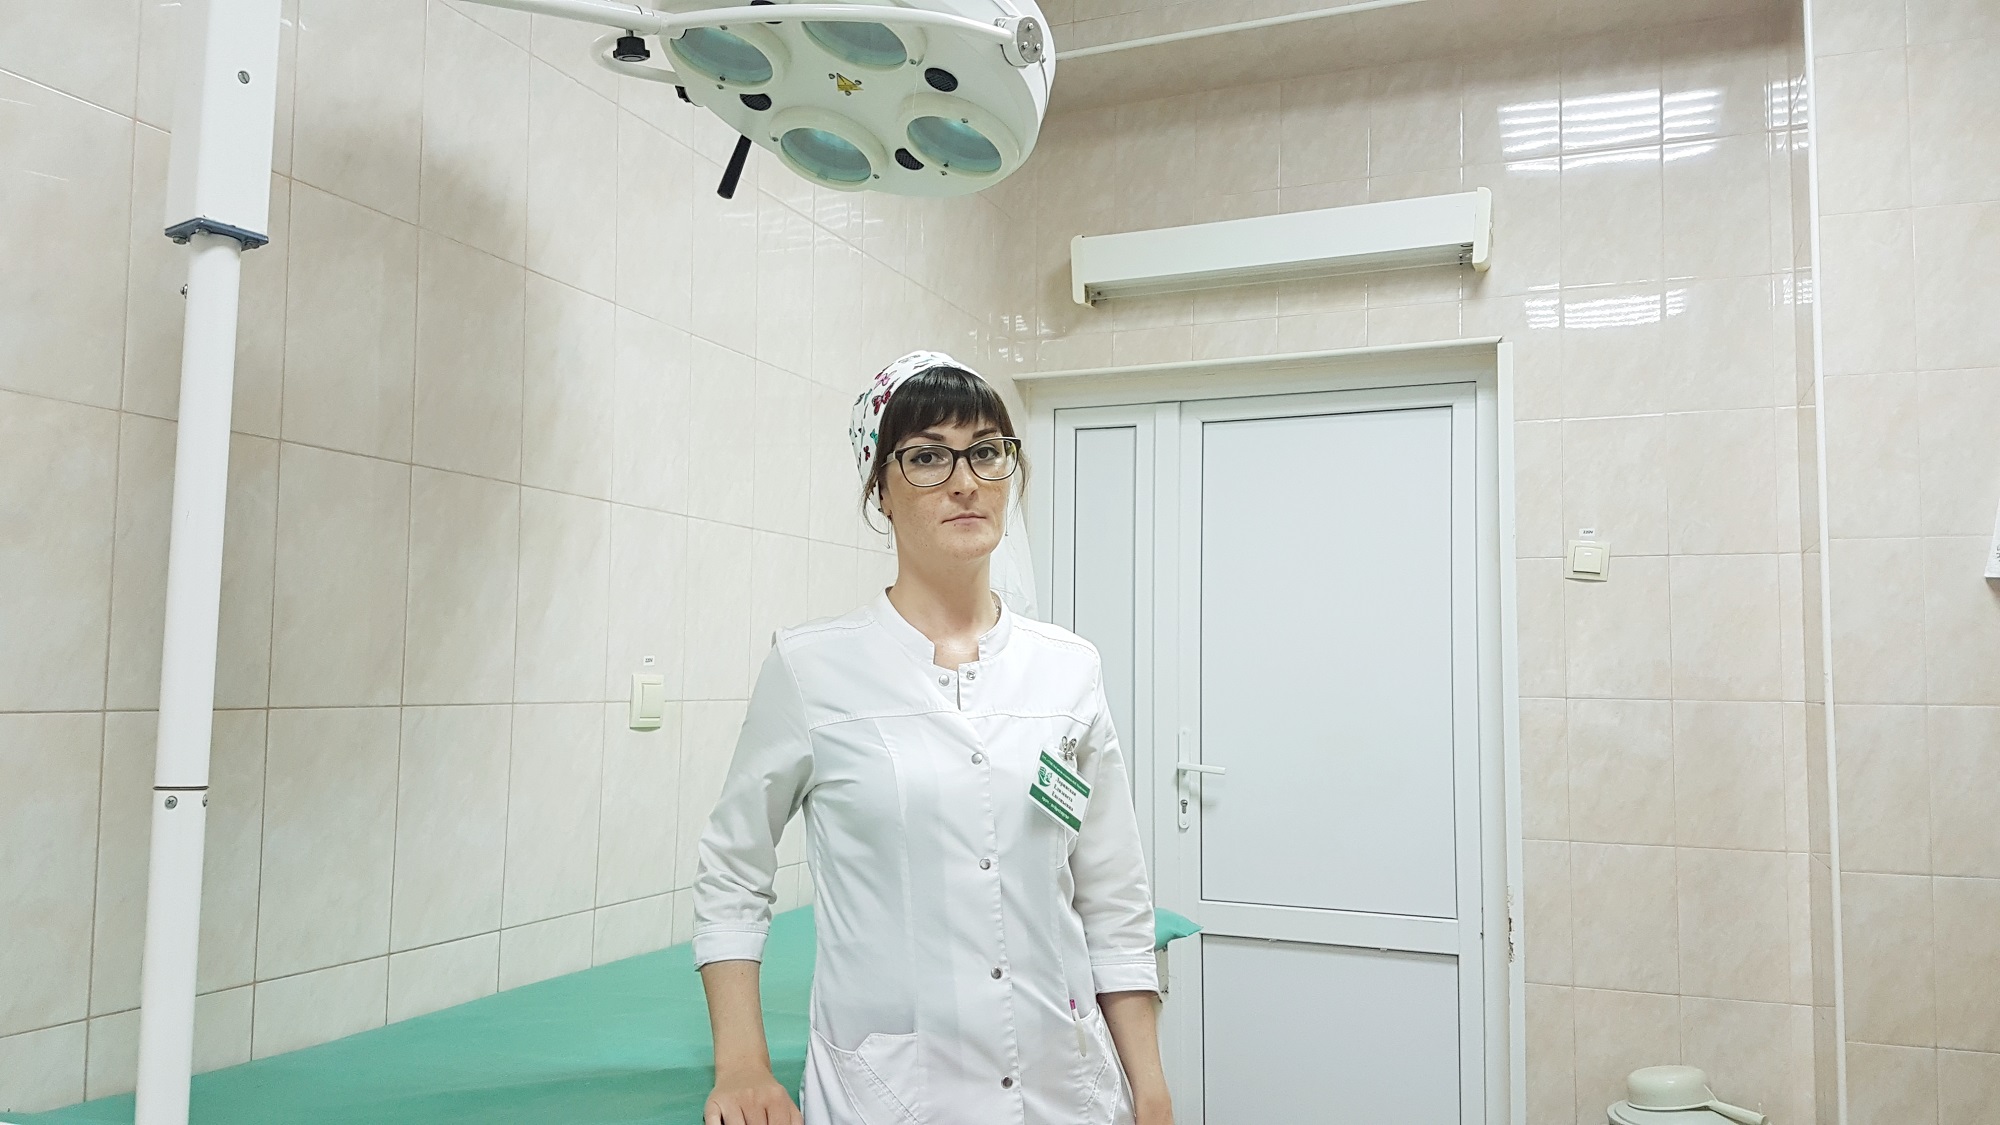 Данилевич марина олеговна врач нейрохирург фото